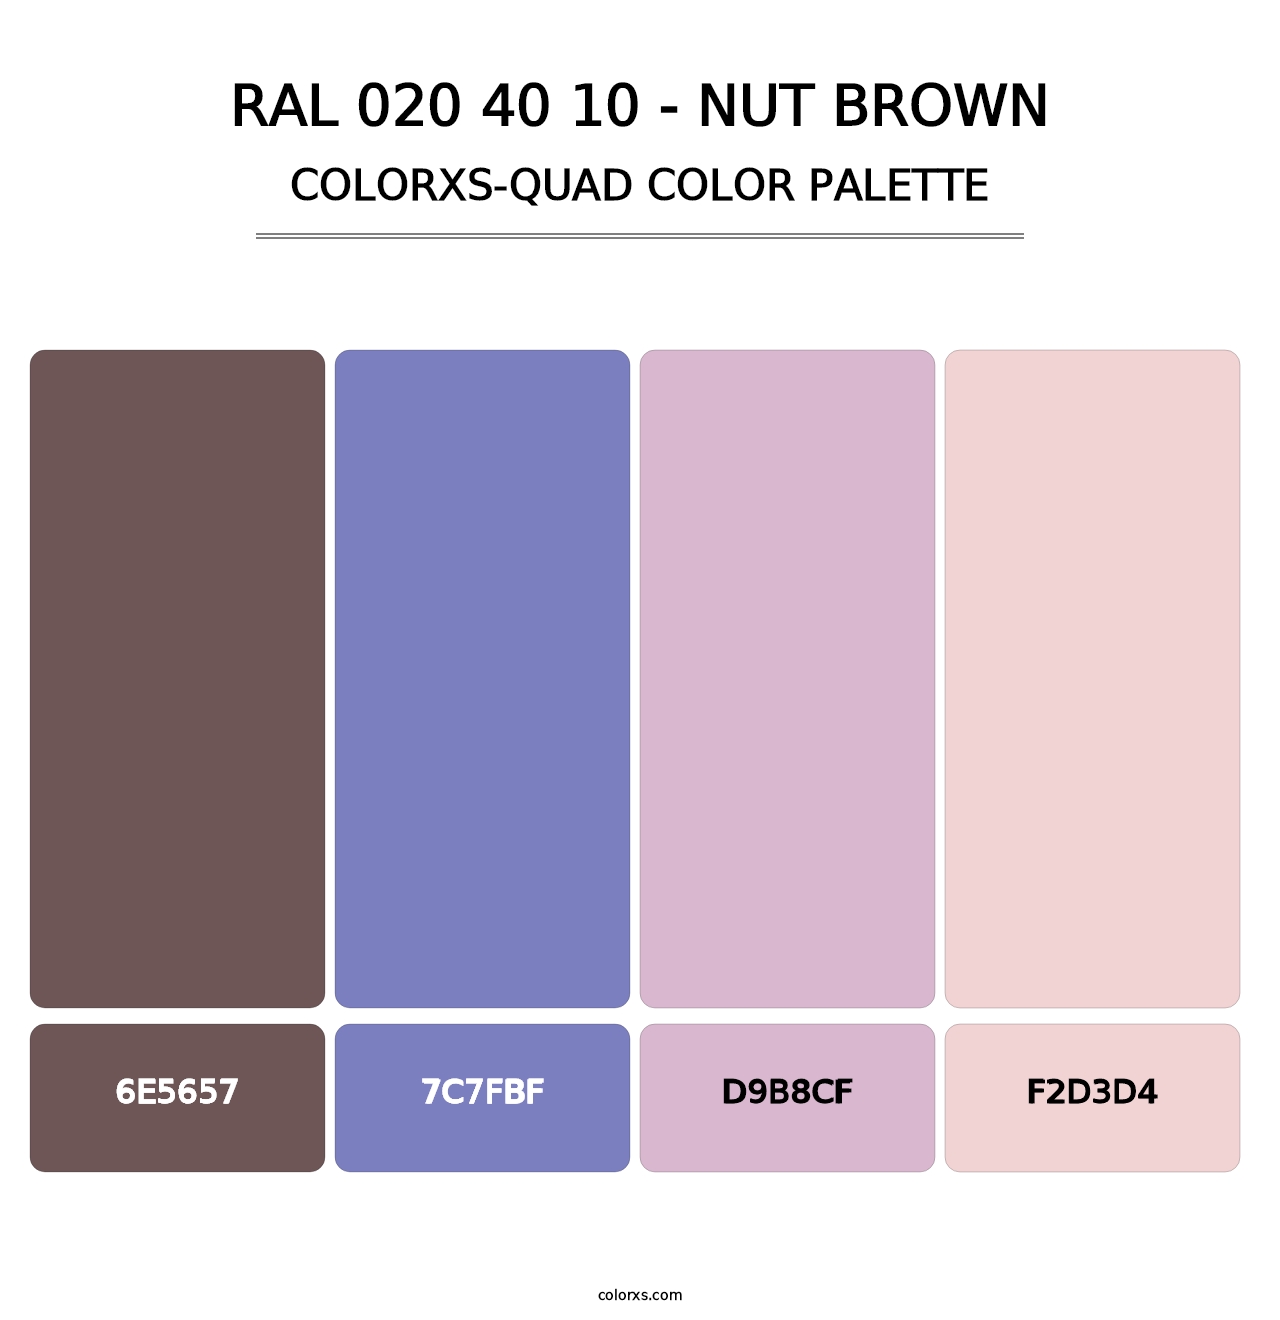 RAL 020 40 10 - Nut Brown - Colorxs Quad Palette